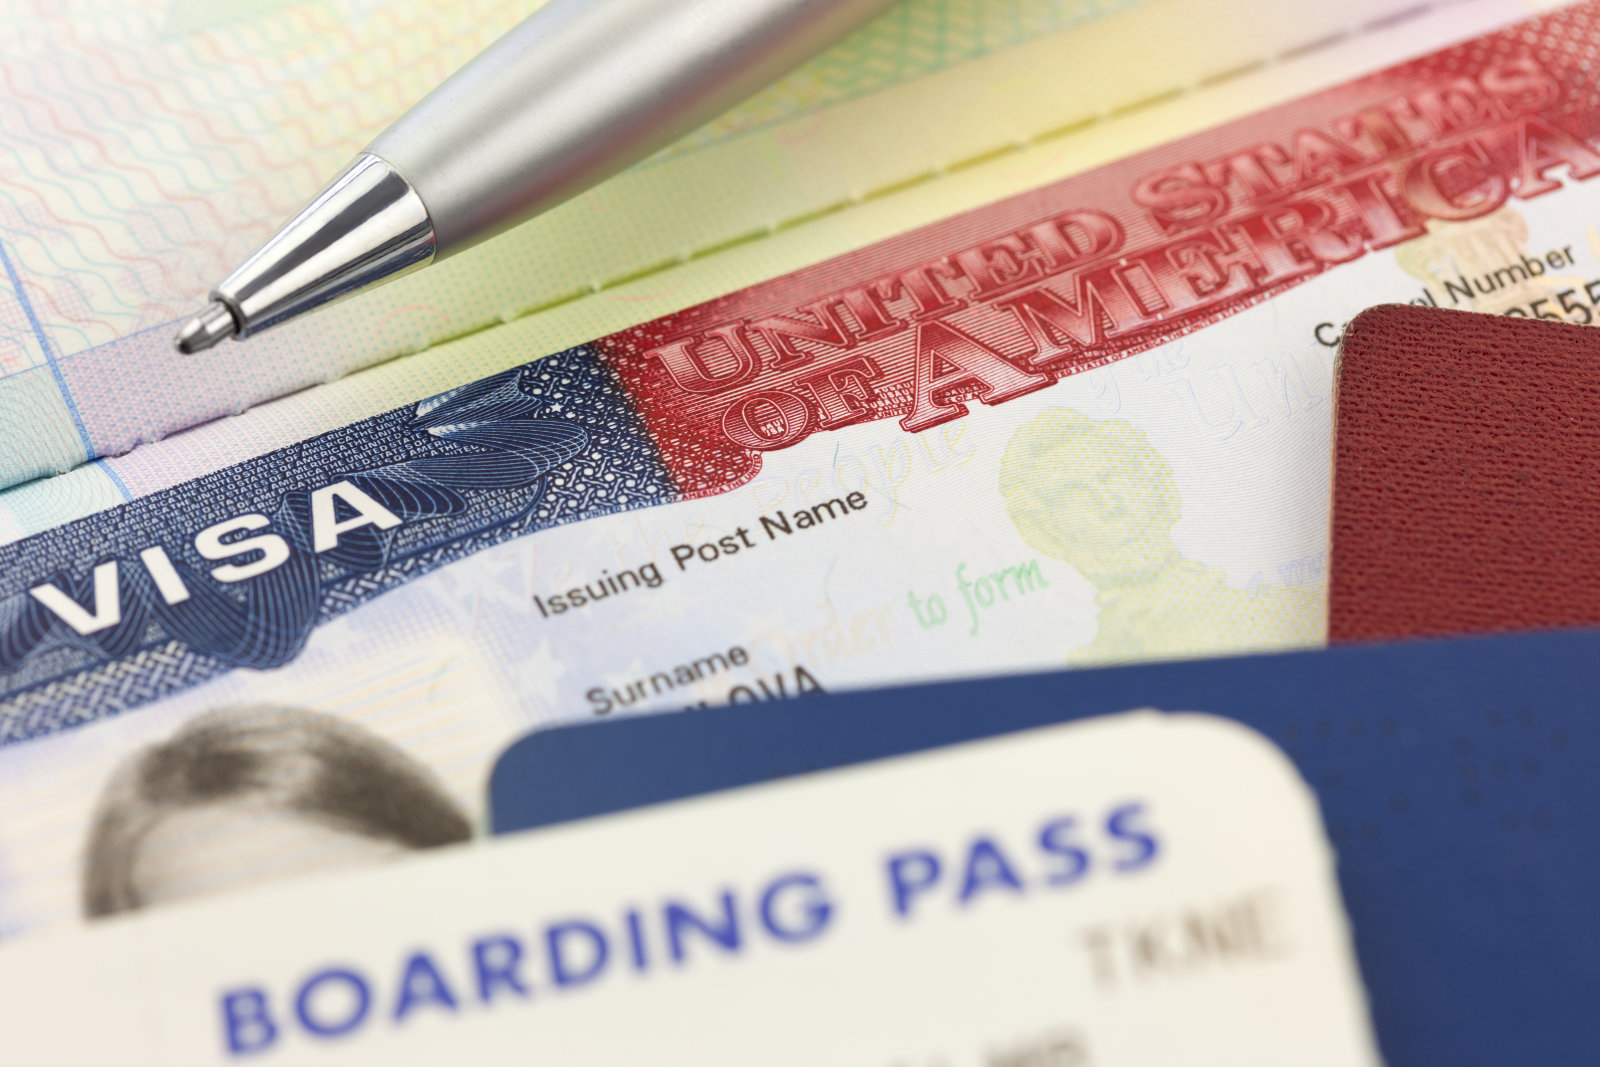 ABD vizesi sosyal medya sdn